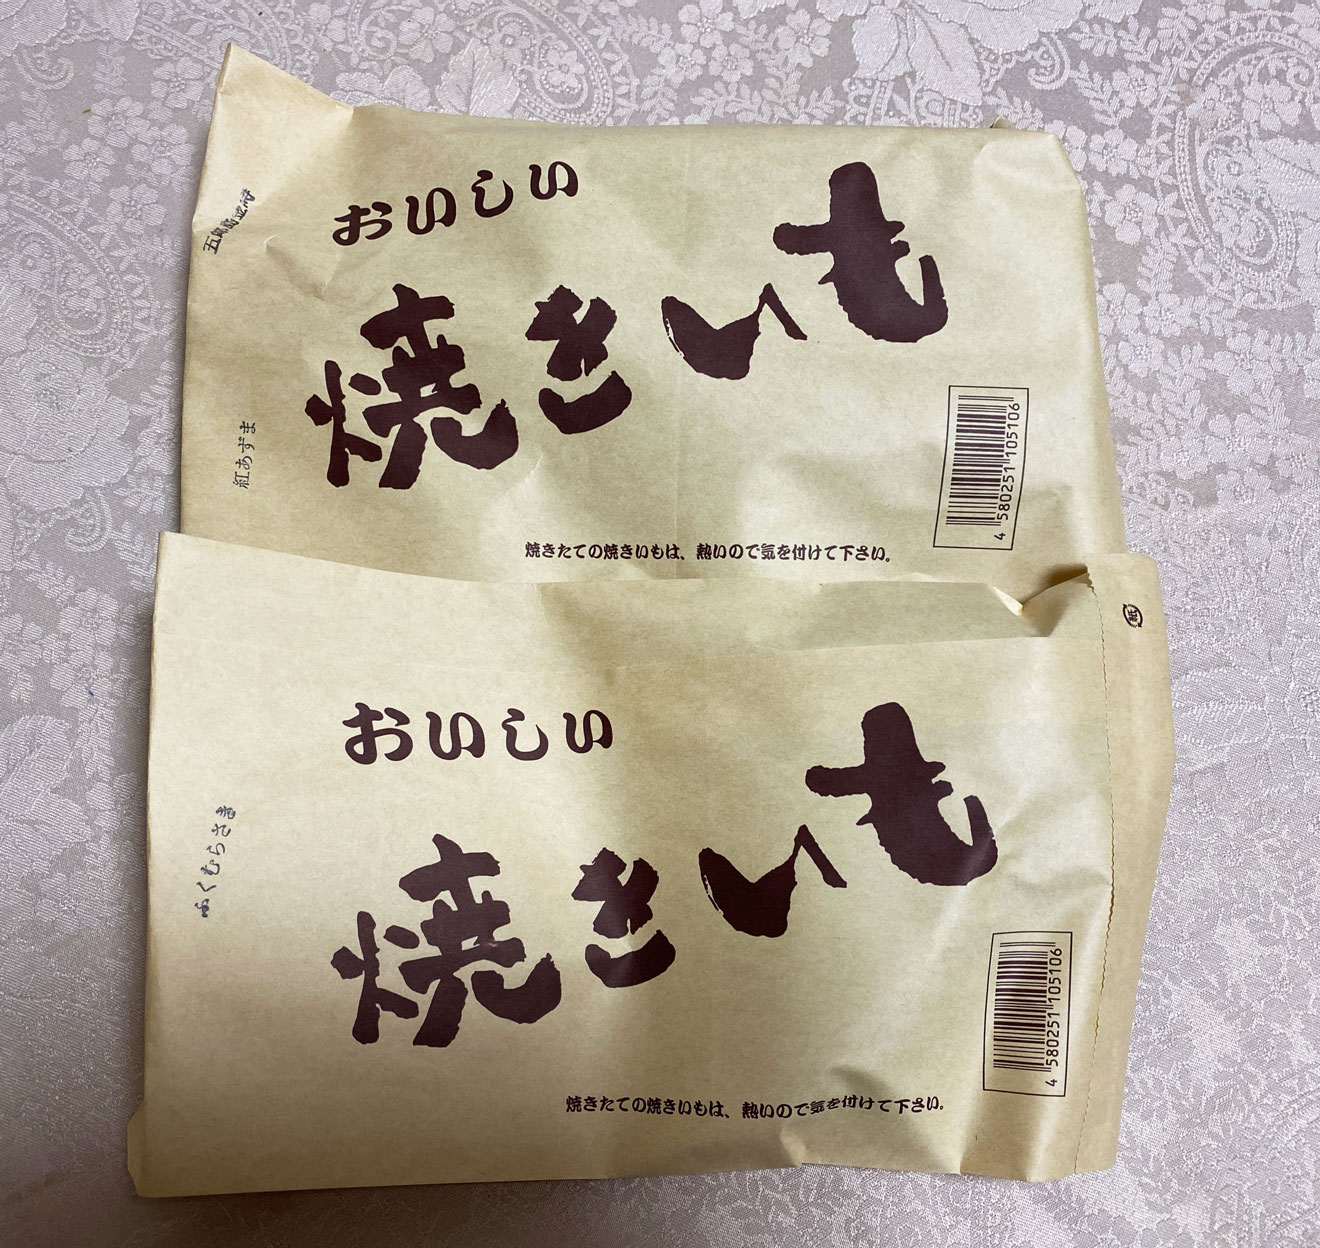 「焼き芋専門店 ふじ」の焼き芋が入った袋